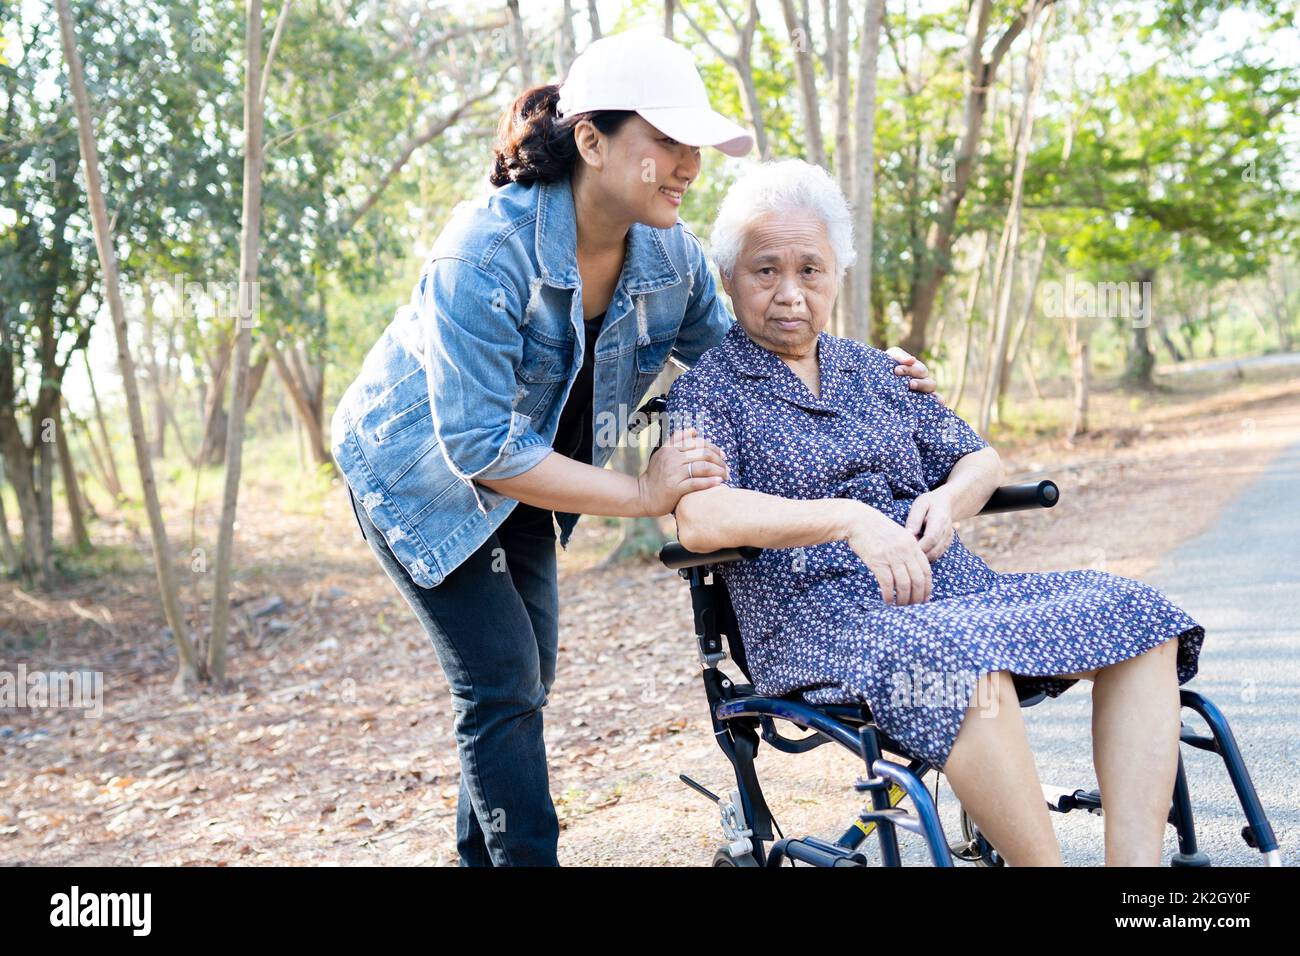 Asiatische ältere oder ältere alte Dame Frau Patientin im Rollstuhl im Park, gesund starke medizinische Konzept Stockfoto